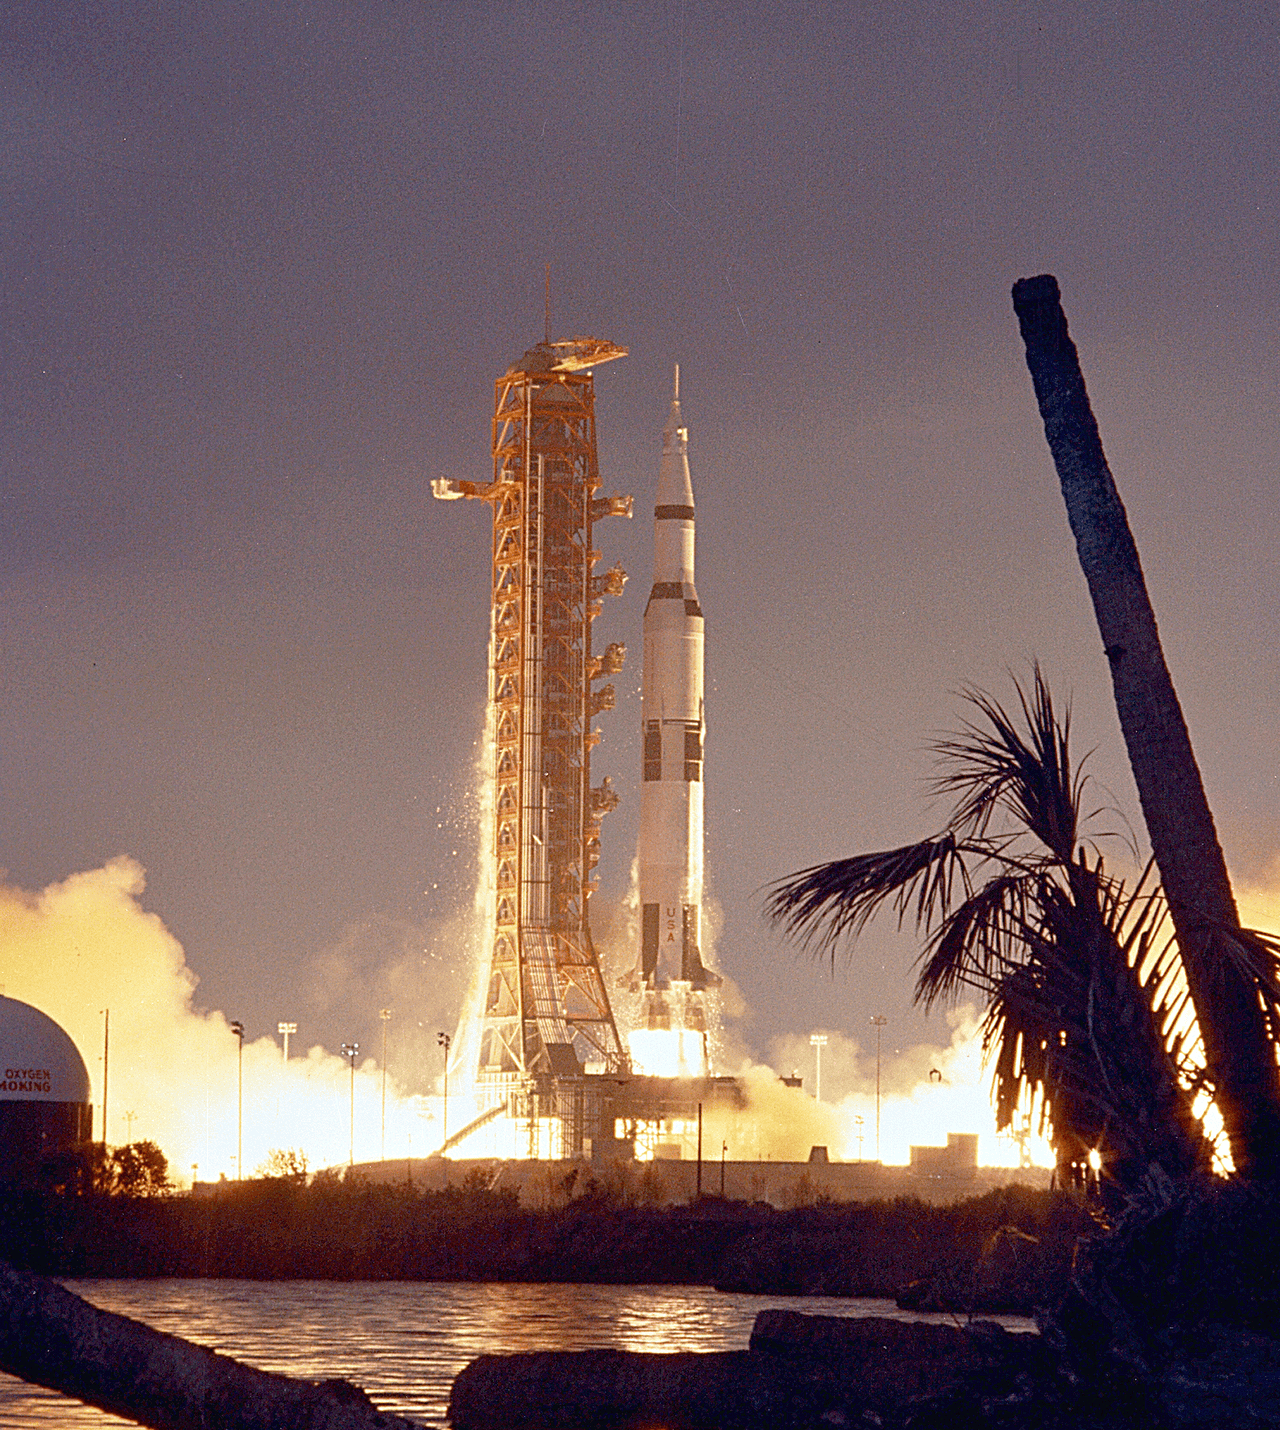 De Apollo 14-lancering in 1971. Beeld: NASA